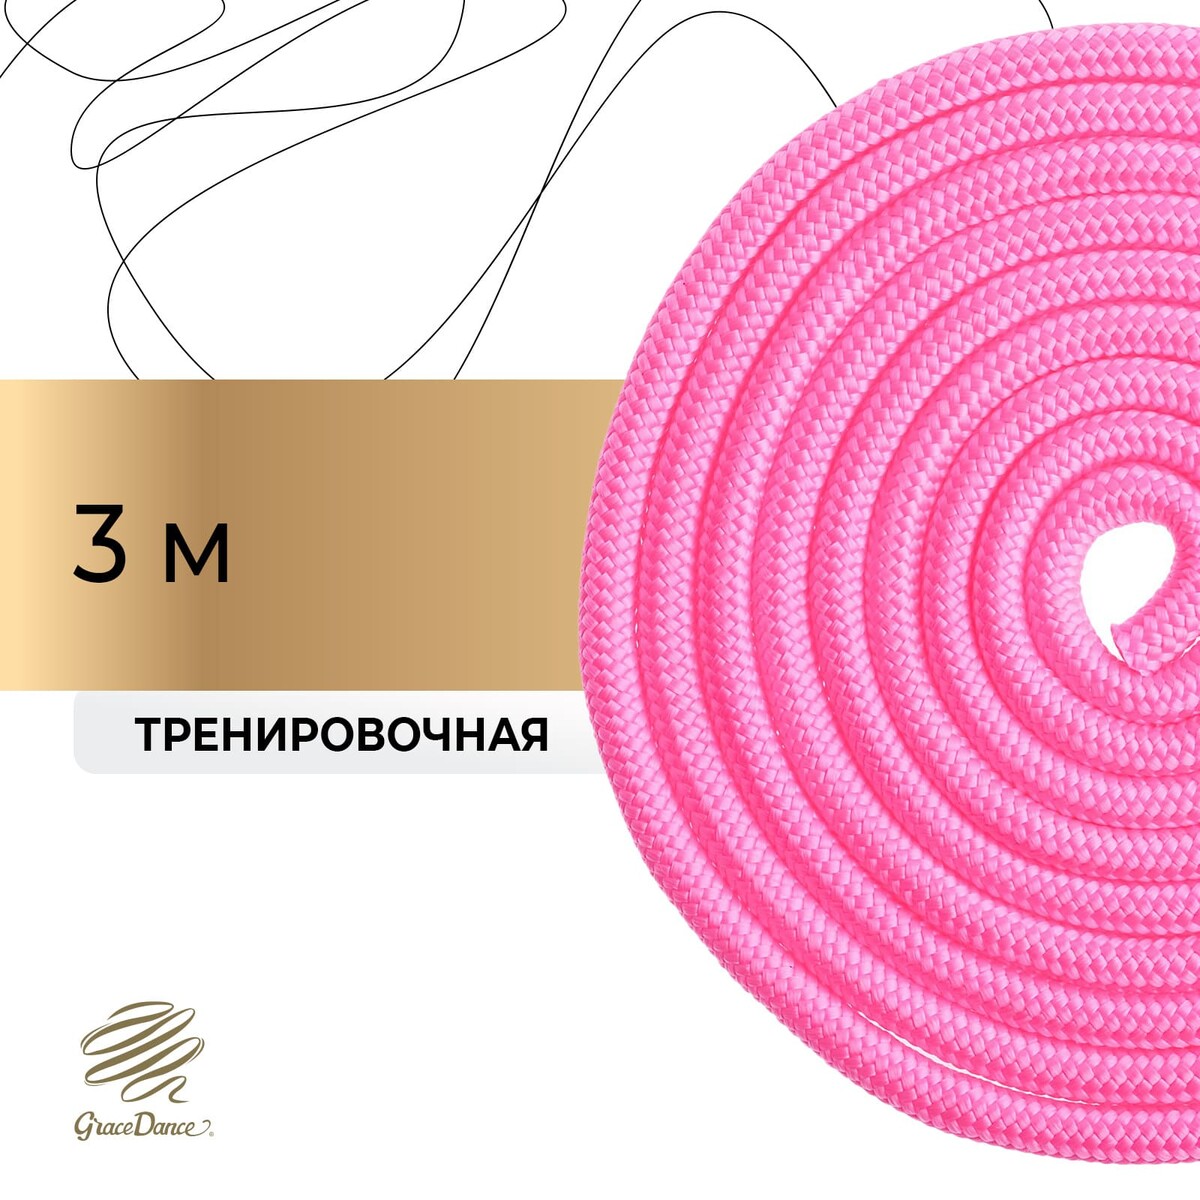 Скакалка для художественной гимнастики grace dance, 3 м, цвет розовый скакалка гимнастическая утяжелённая grace dance с люрексом 2 5 м 150 г неоновый розовый серебристый